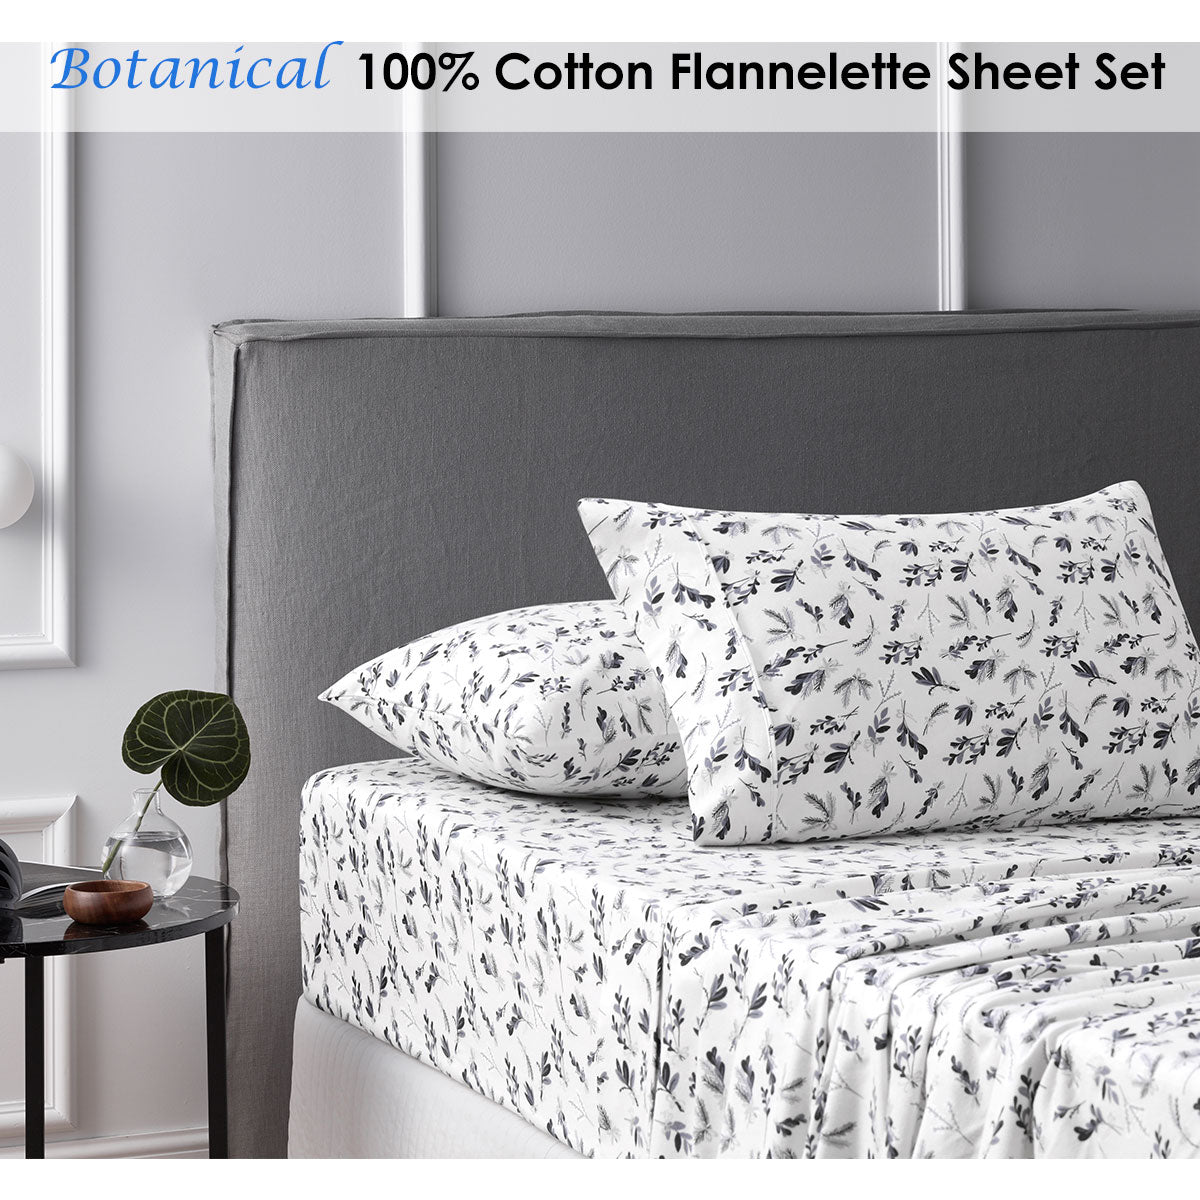 DOUBLE Accessorize Cotton Flannelette Sheet Set - Botanical Double